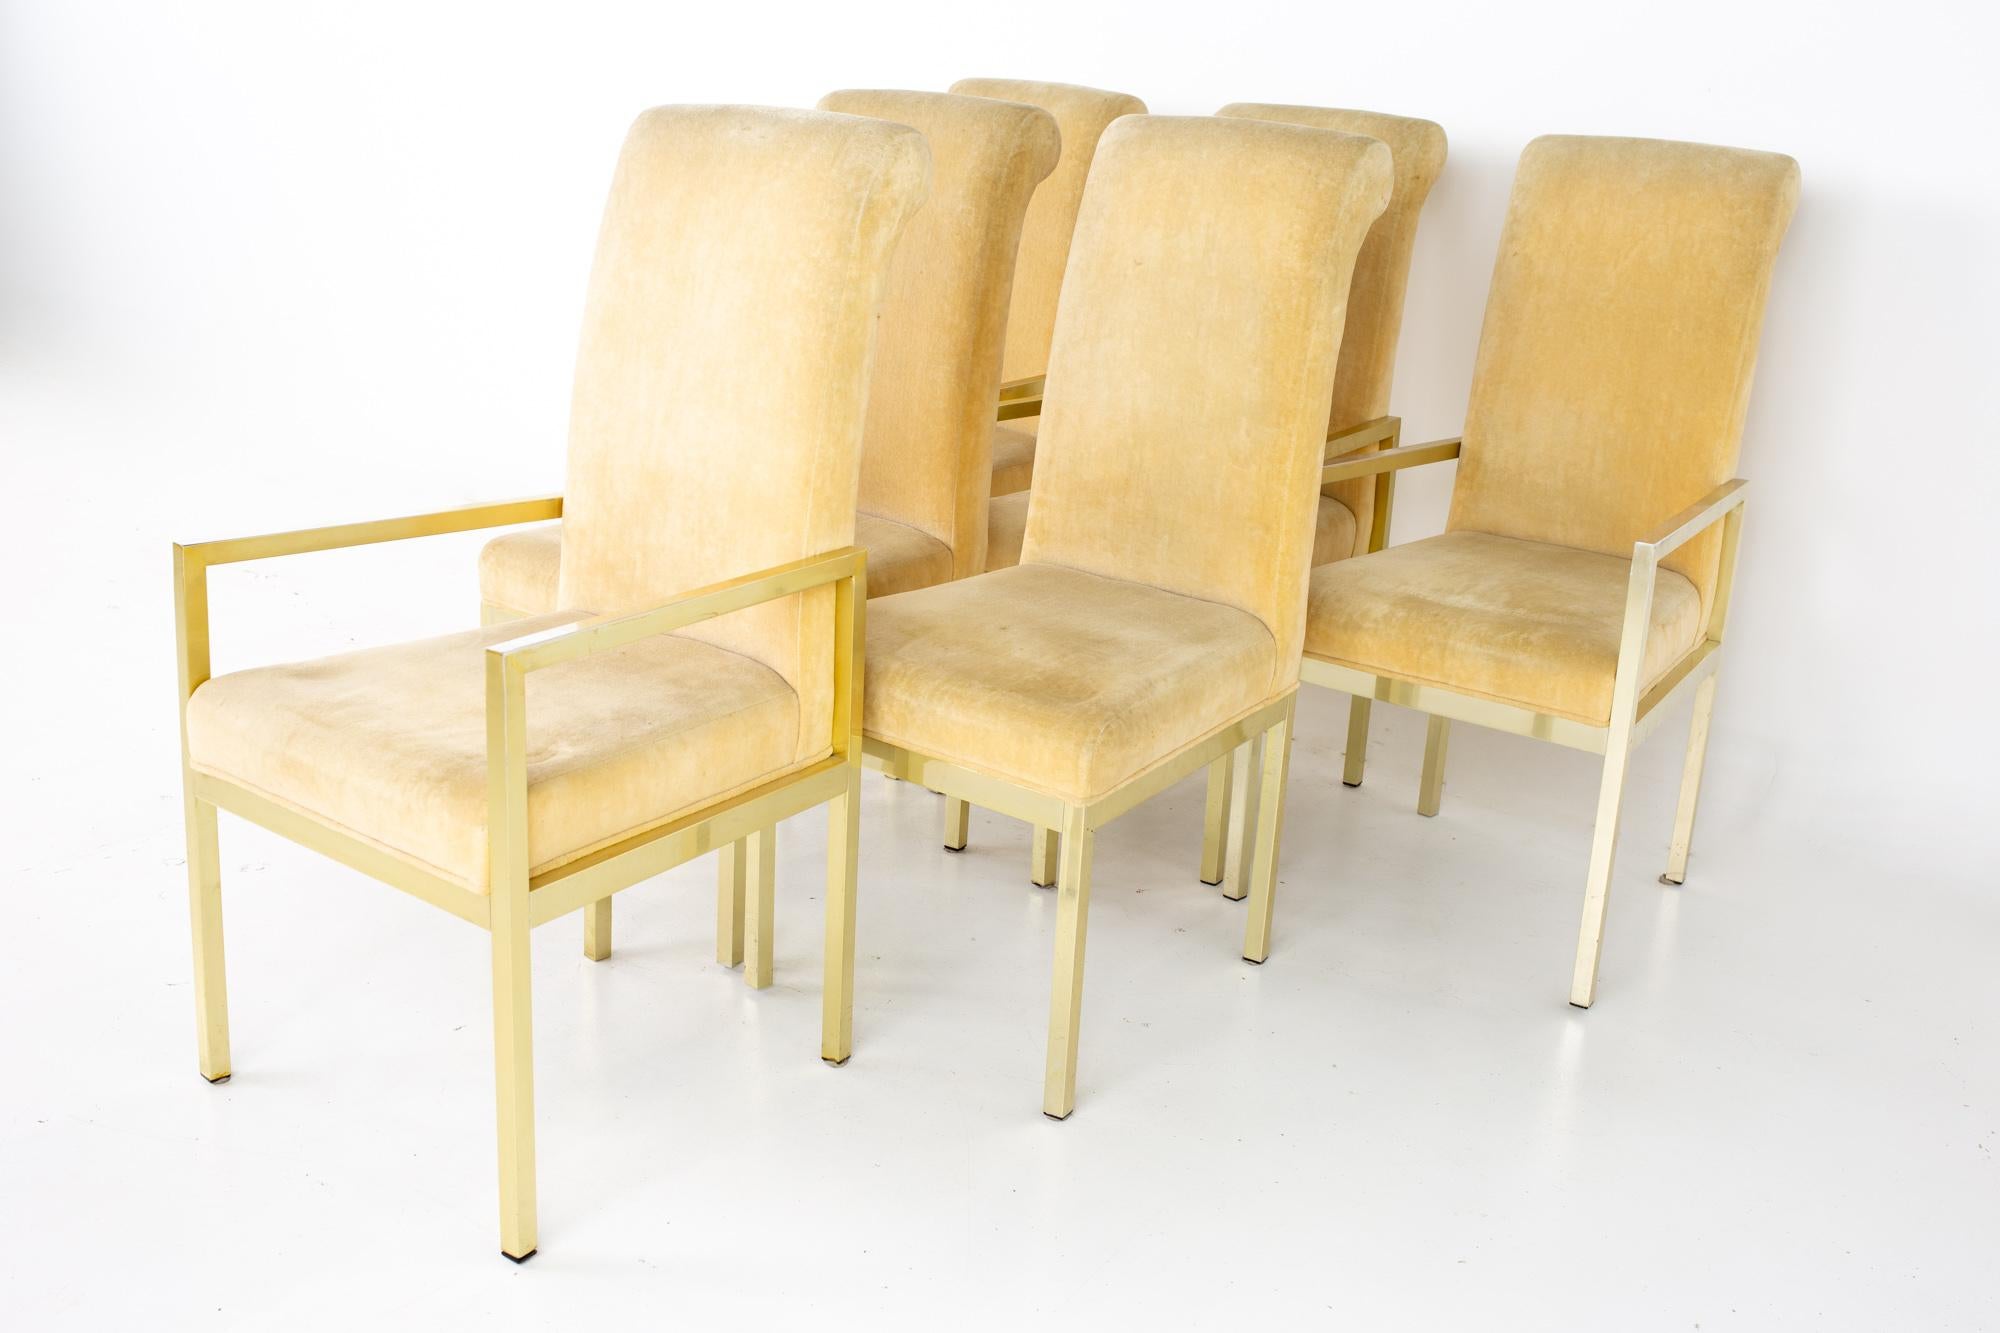 Chaises de salle à manger Milo Baughman pour Design Institute of America en laiton du milieu du siècle - jeu de 6
Chaque chaise mesure : 21.5 de large x 21,5 de profond x 42 de haut, avec une hauteur d'assise de 18 pouces

Tous les meubles